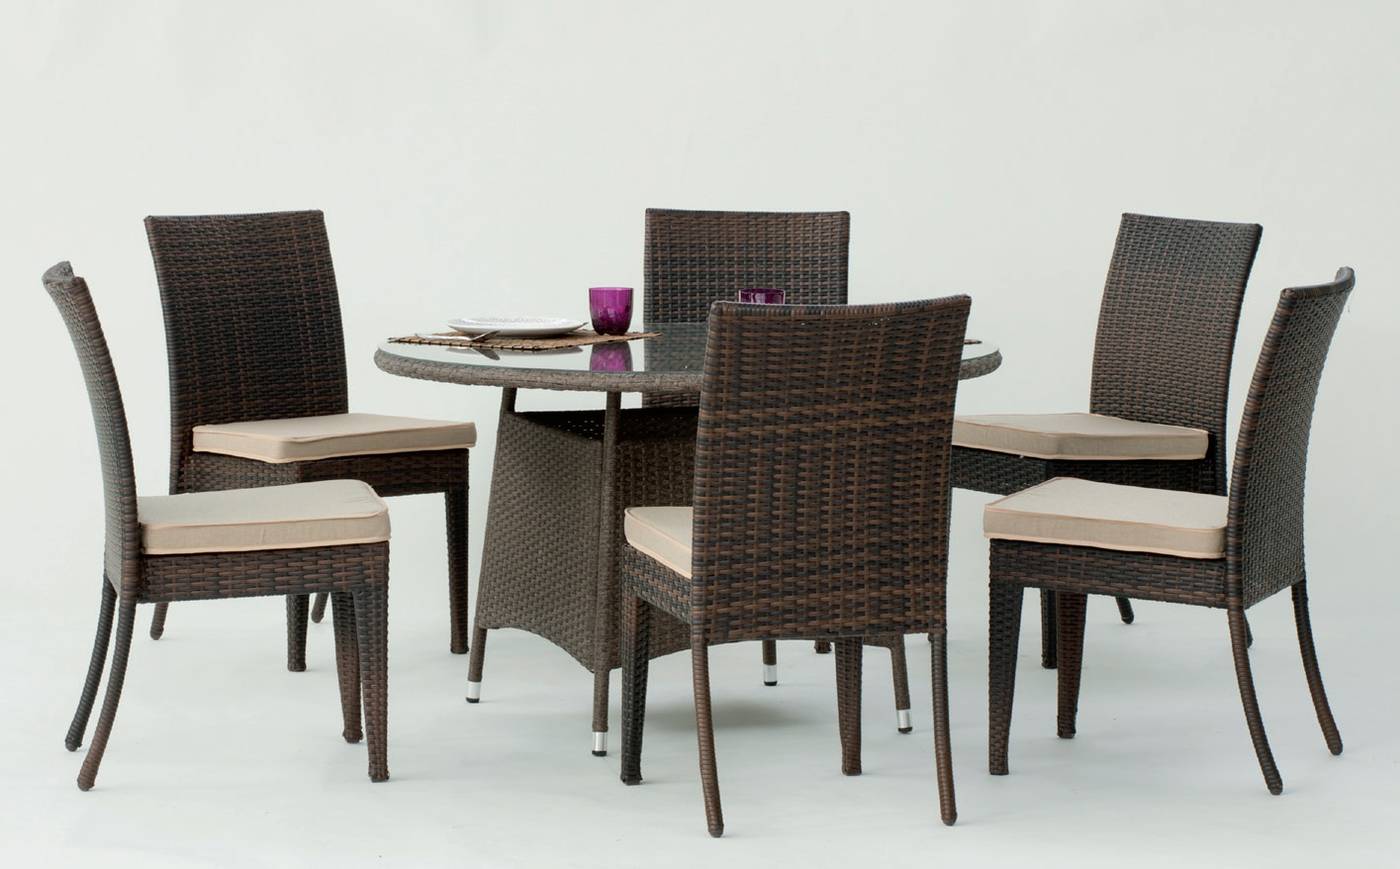 Conjunto de ratán sintético: mesa redonda de 120 cm. y 6 sillas apilables con cojines